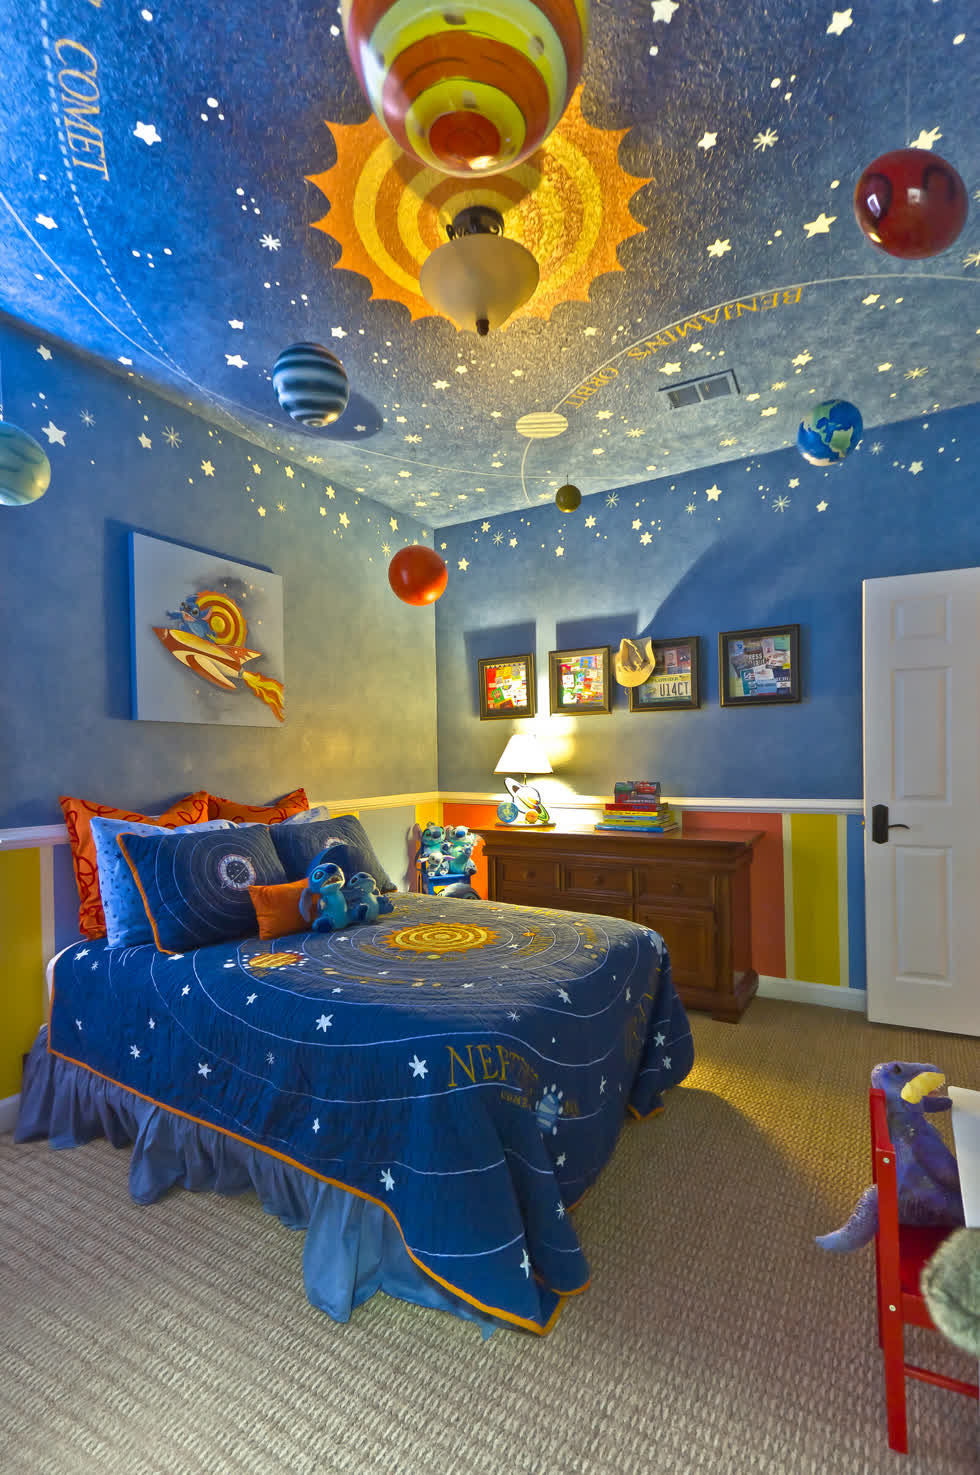 Thiết kế phòng ngủ bé trai với chủ đề vũ trụ không gian.